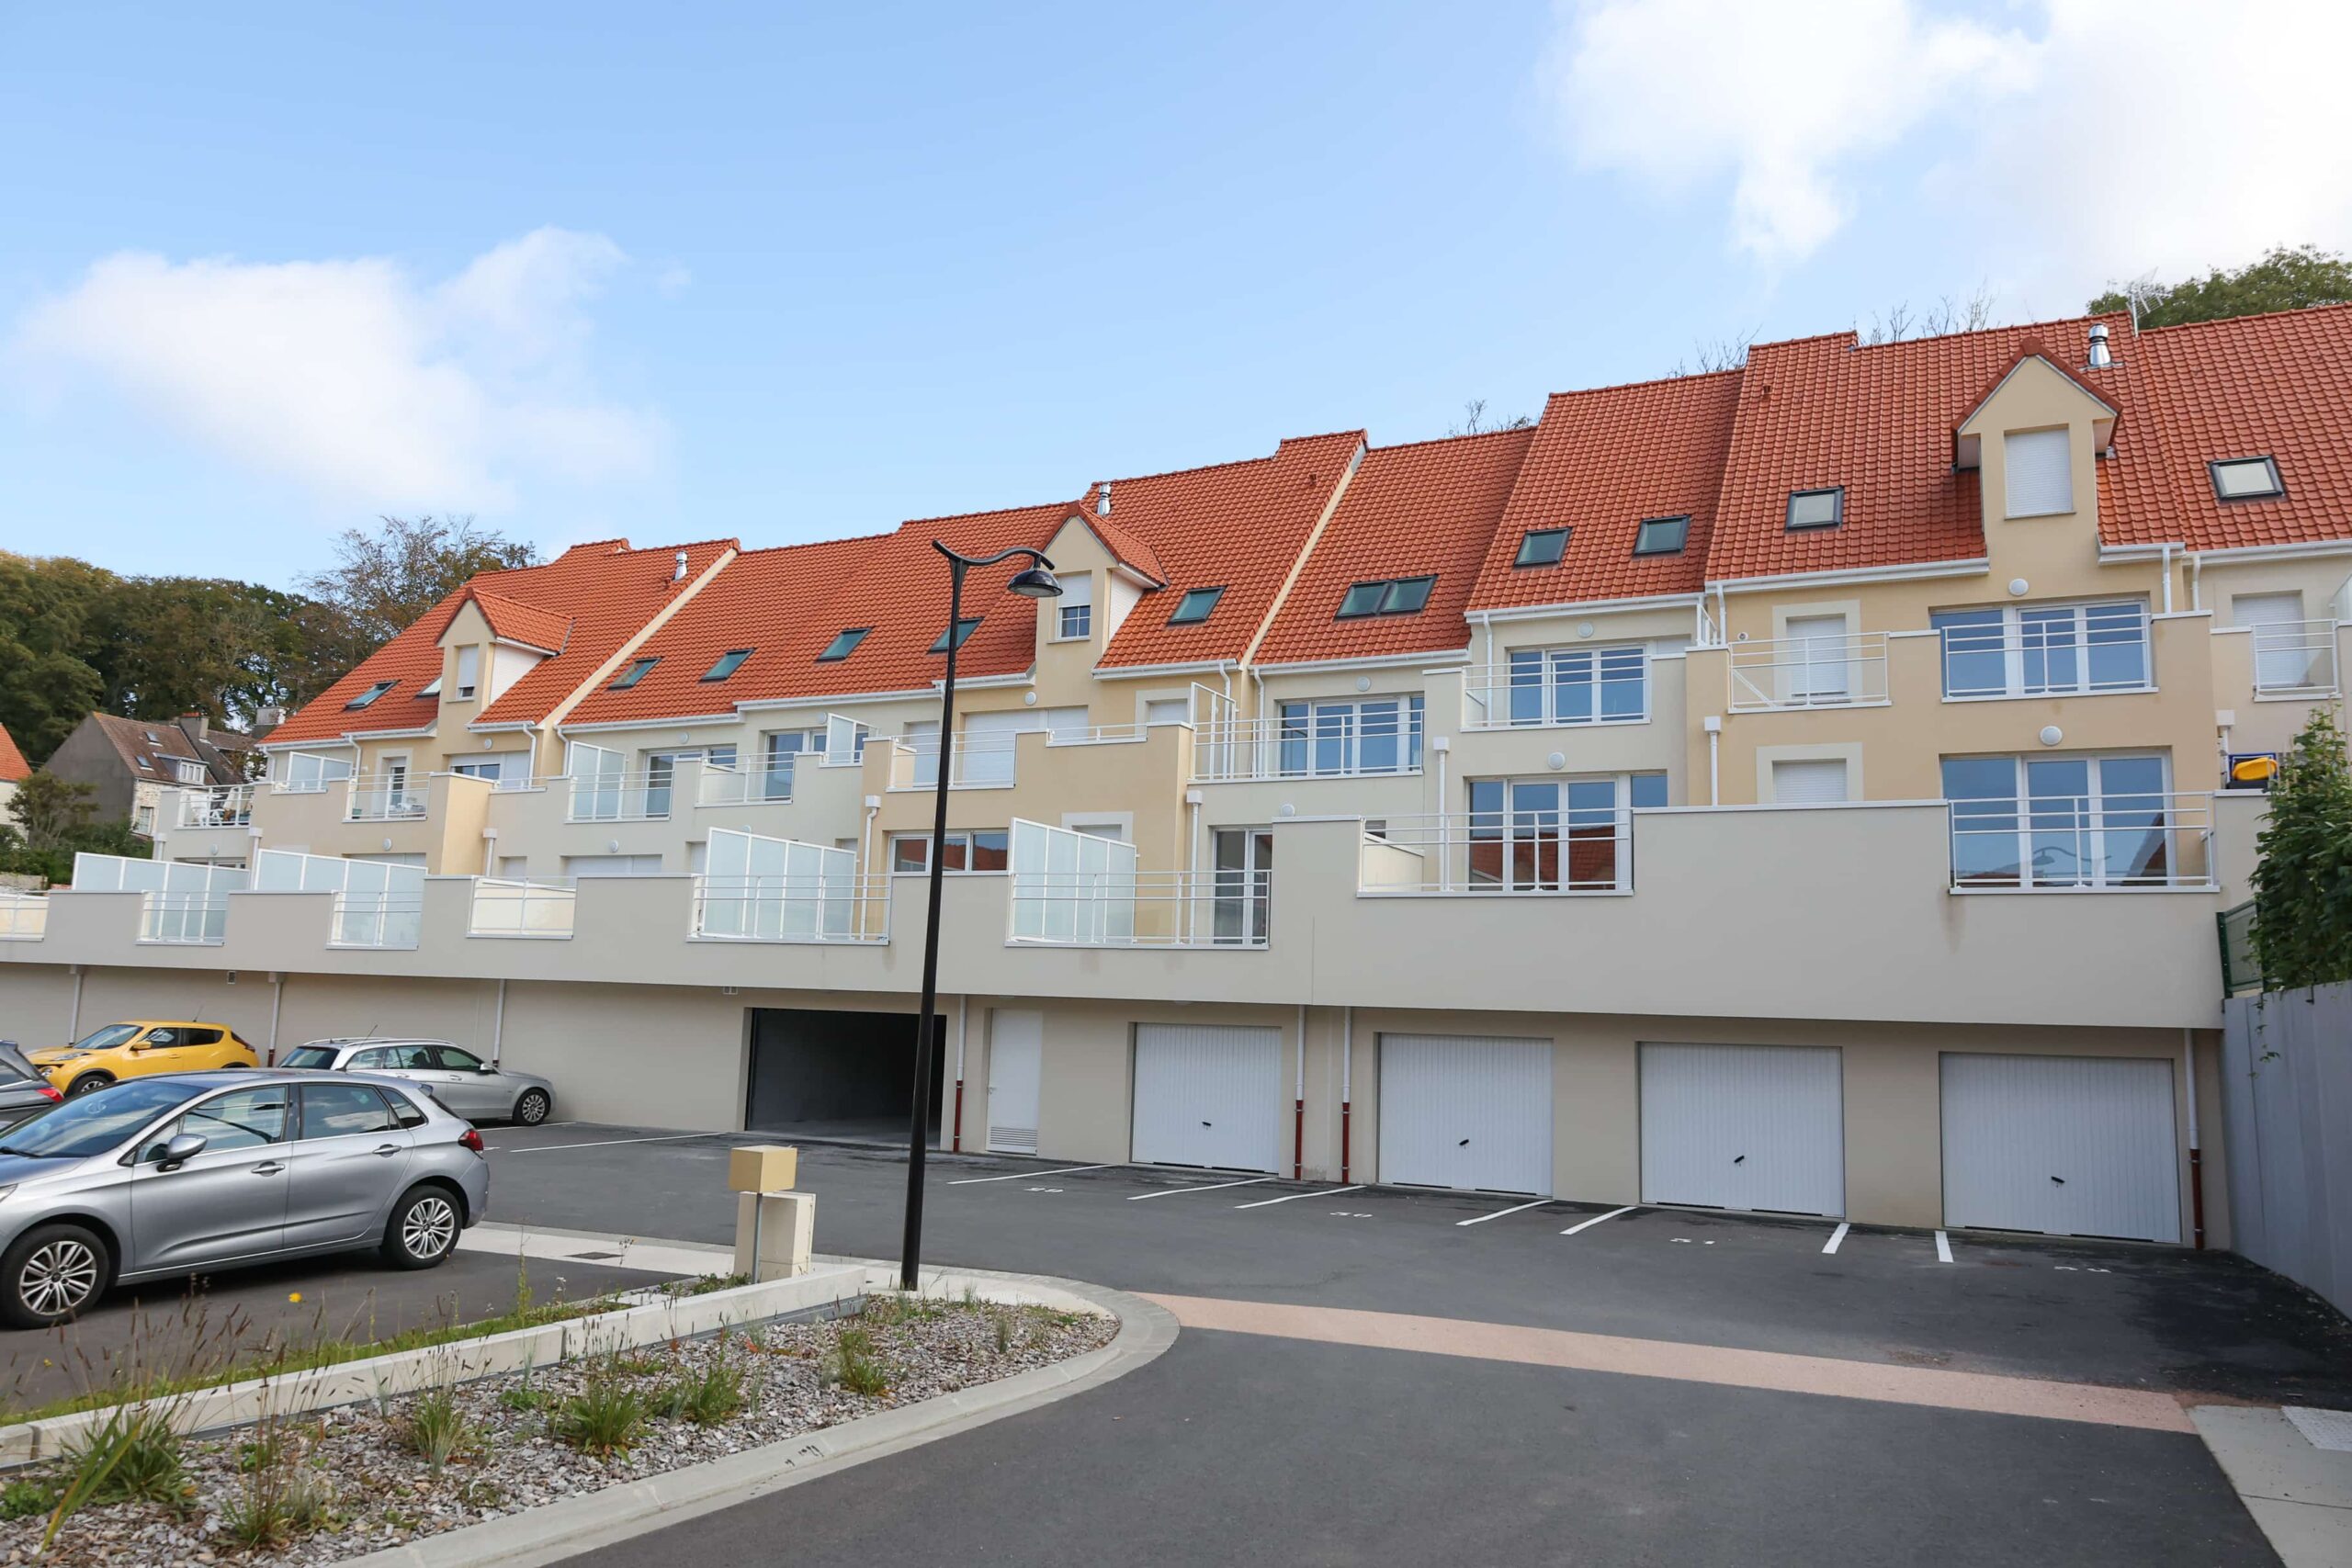 Un nouveau quartier prend vie avec 54 logements - Ville de Saint-Martin ...